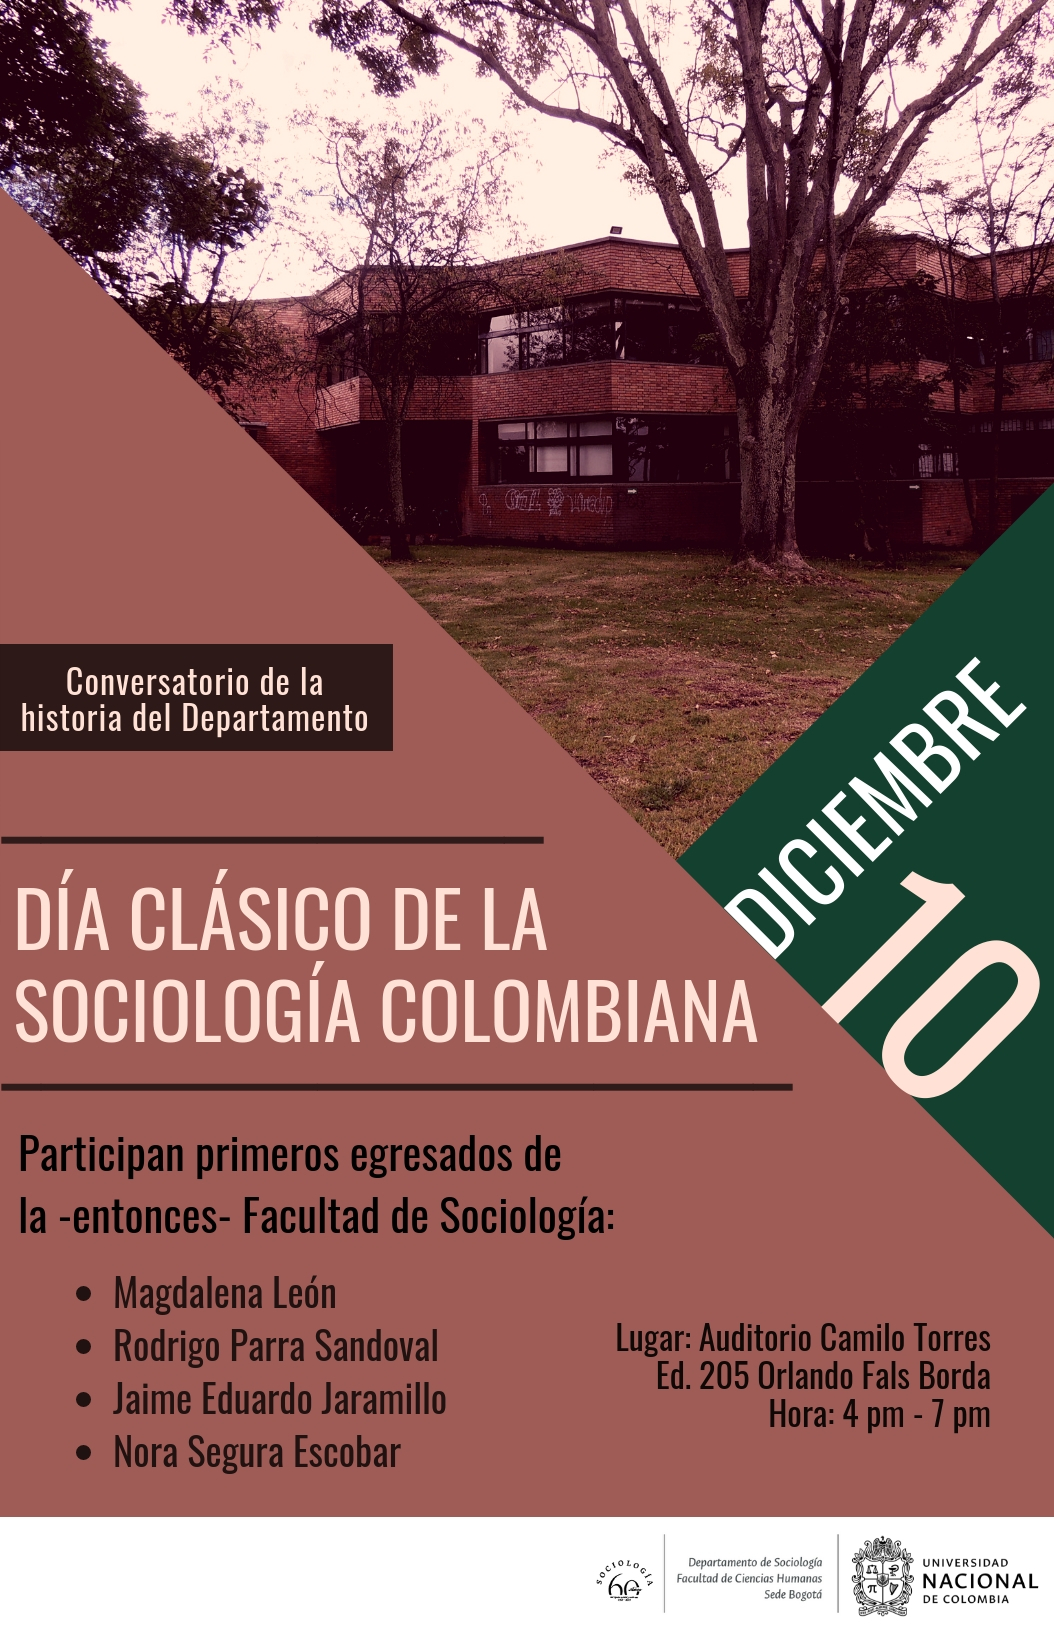 Día clásico de la sociología colombiana